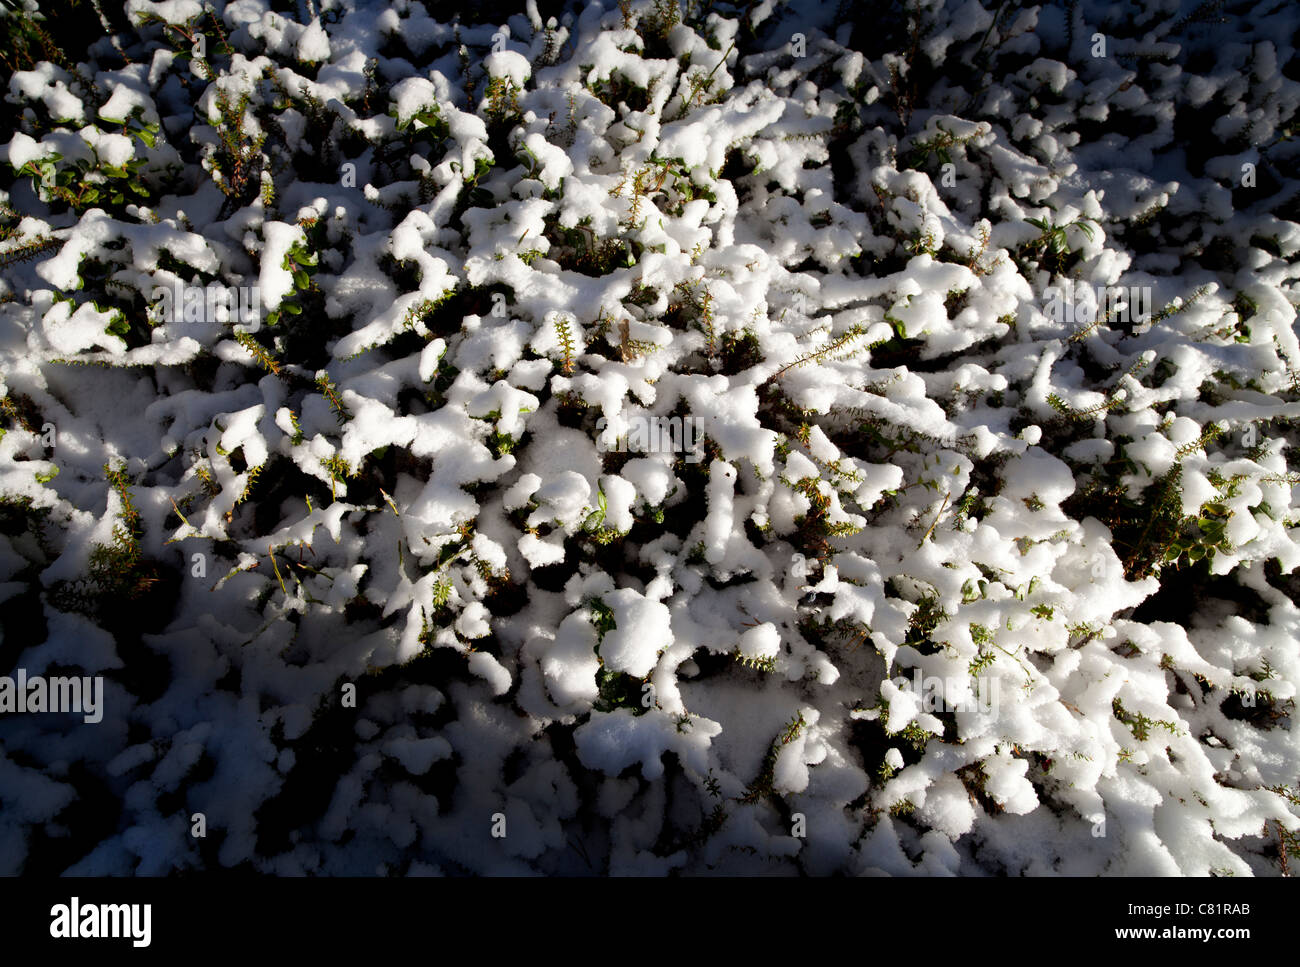 Automne première neige couvrant des plantes de vachette ( Vaccinium vitis-idaea ) , Finlande Banque D'Images